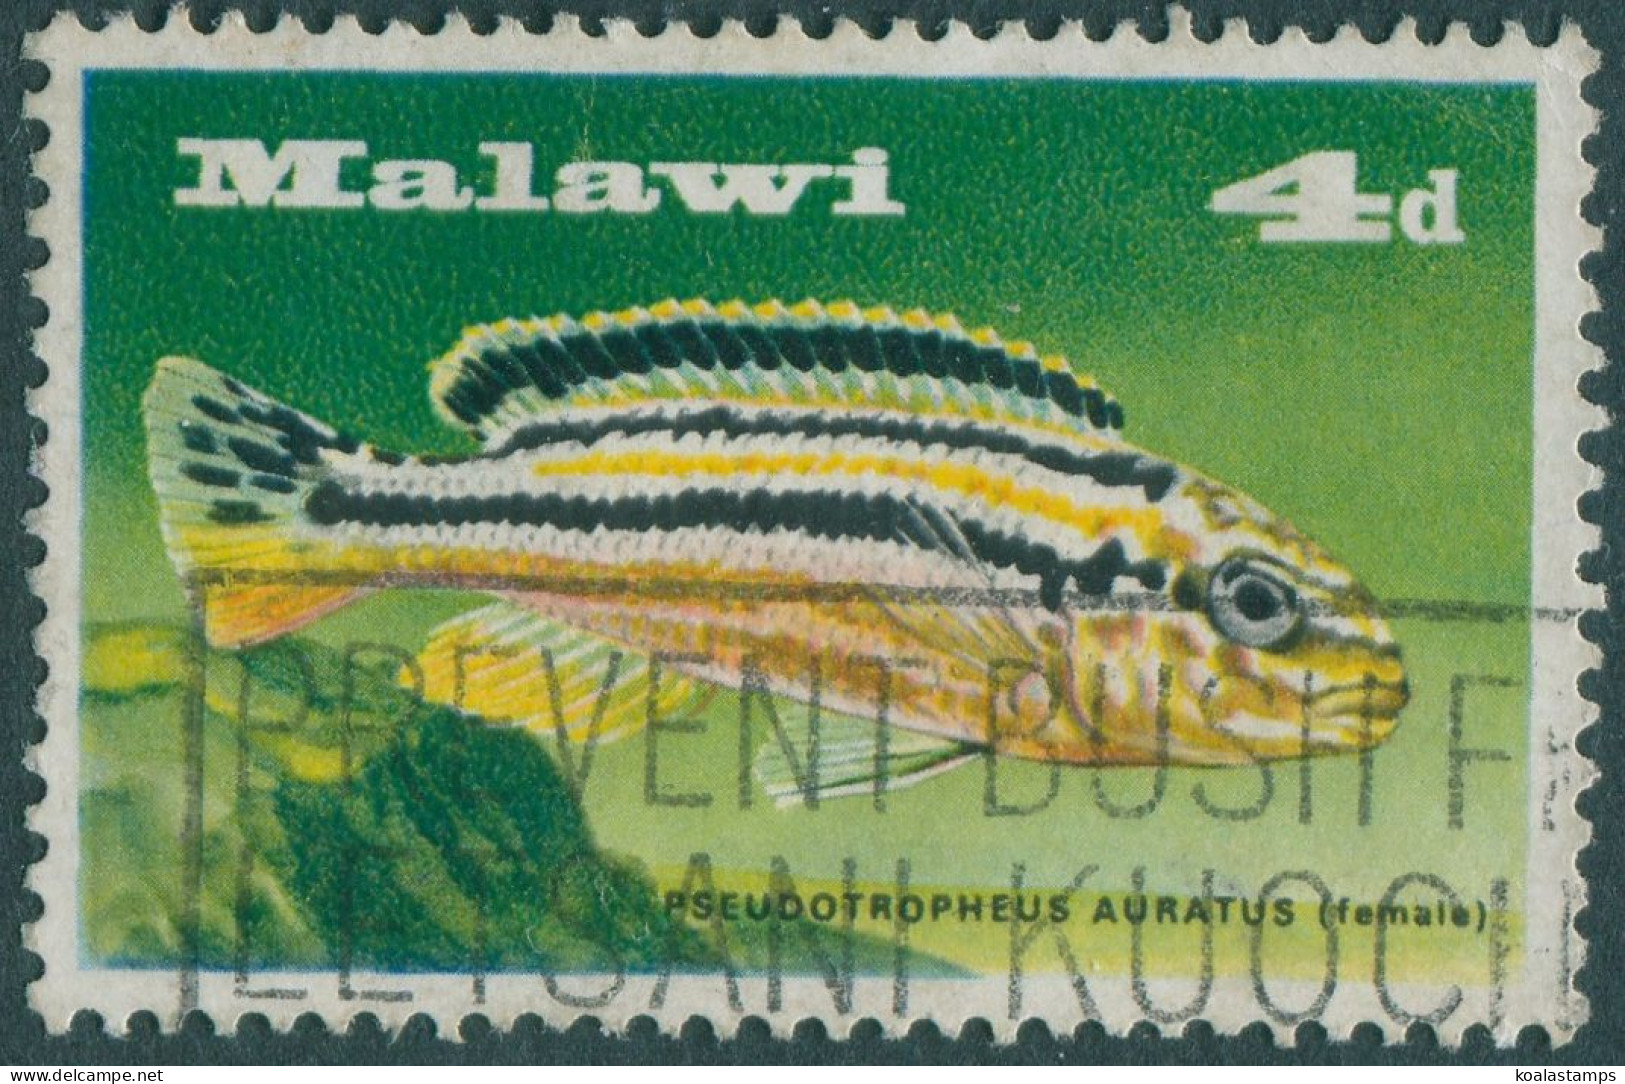 Malawi 1967 SG281 4d Chiclid Fish FU - Malawi (1964-...)